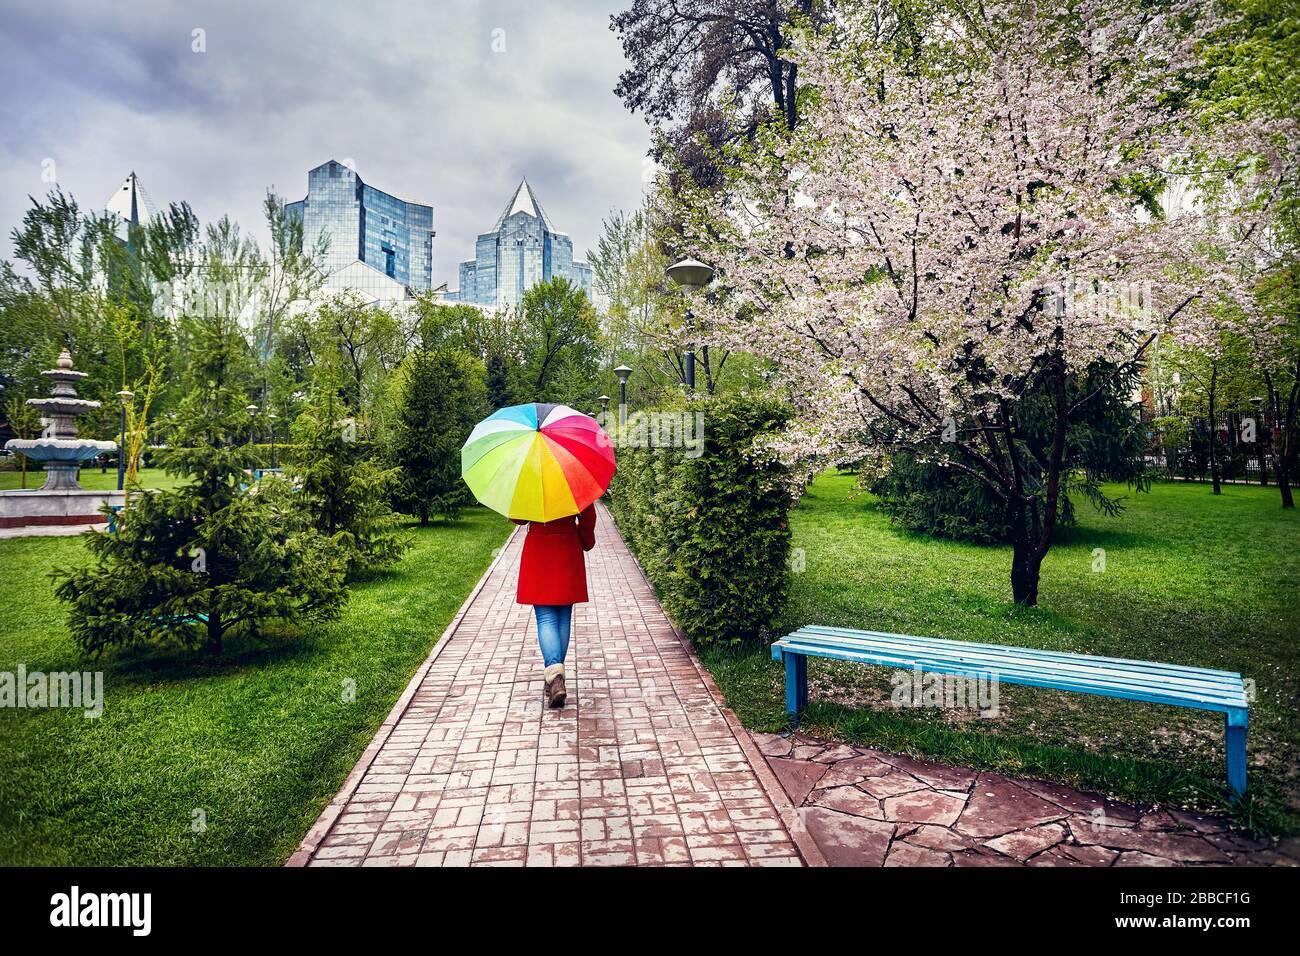 Frau im roten Mantel mit Regenbogen Regenschirm Fuß in den Park mit blühenden Bäumen bei bedecktem Himmel Stockfoto